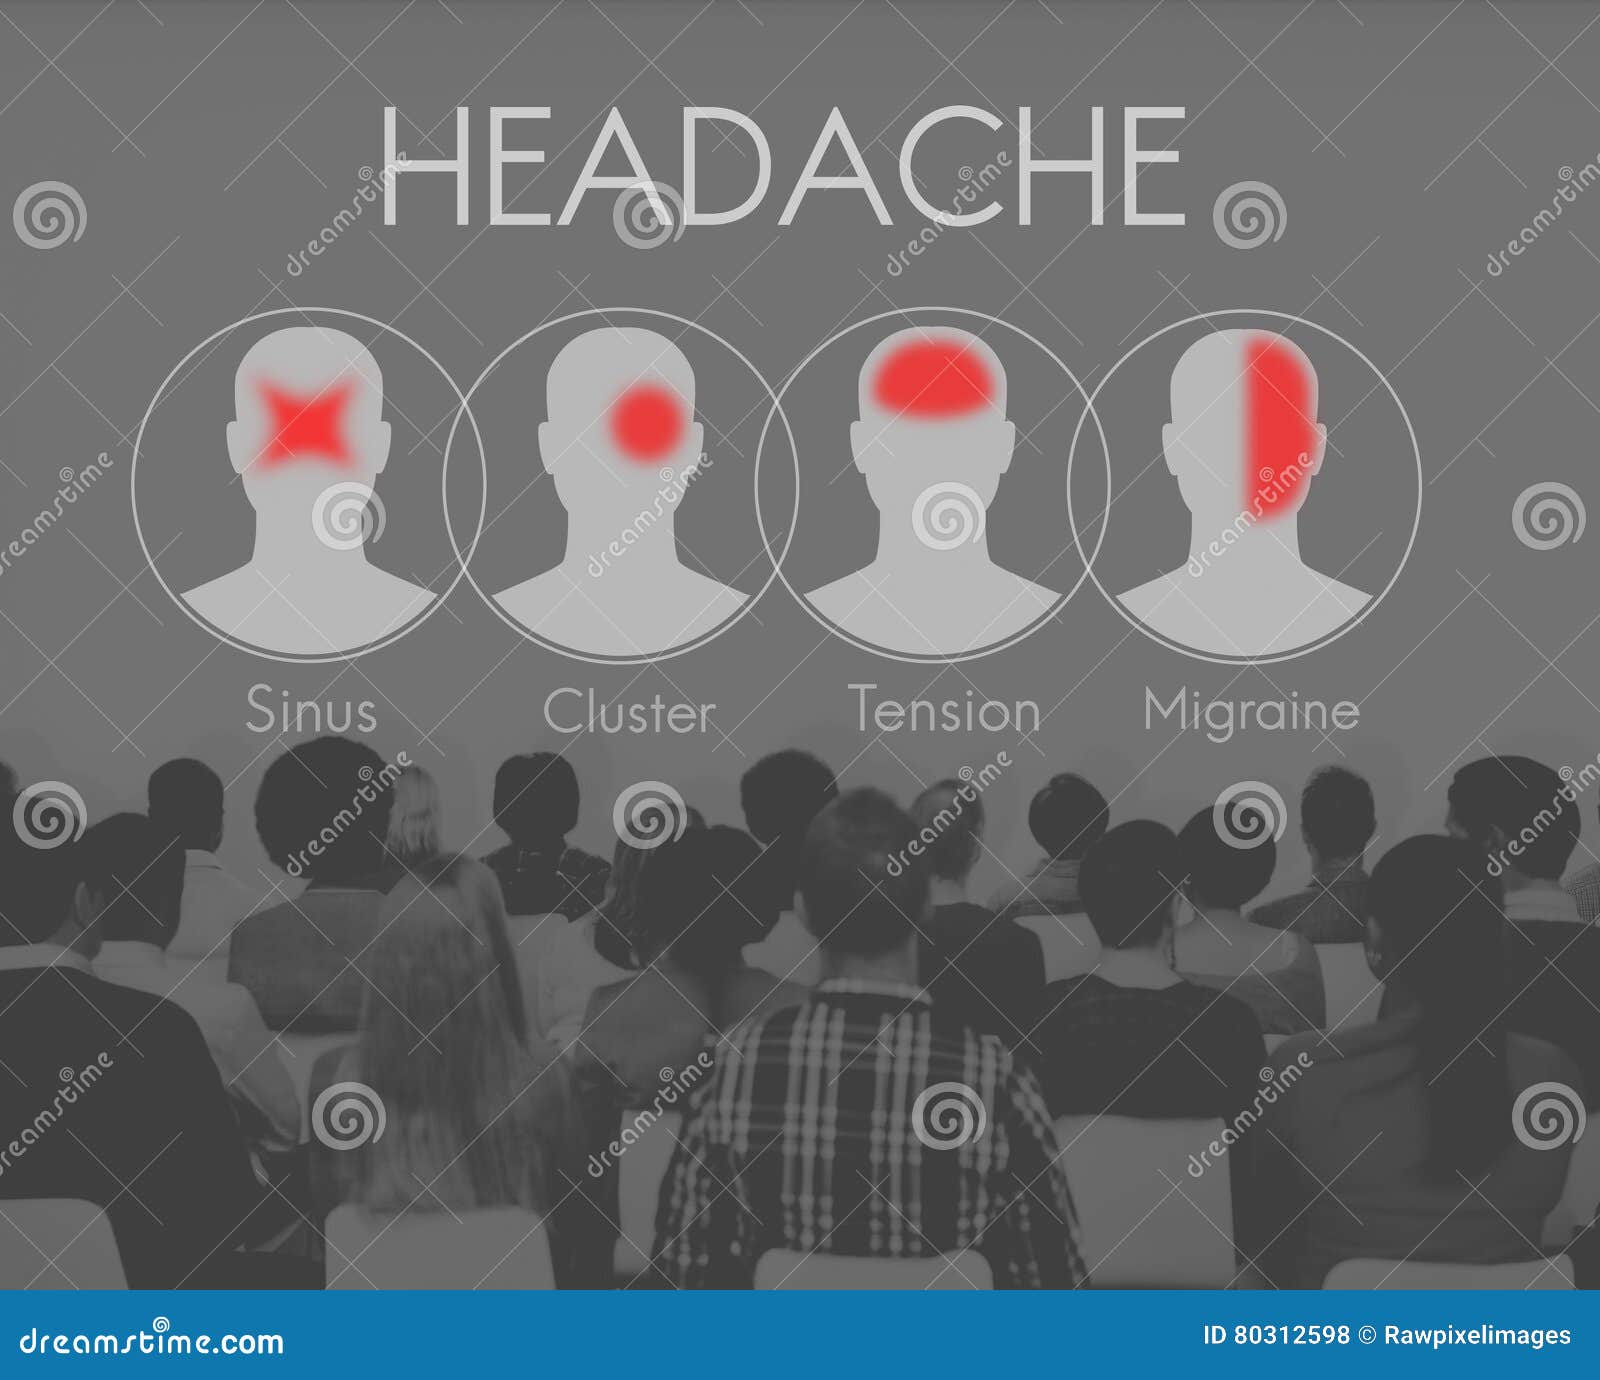 headache symptom migraine tension cluster concept